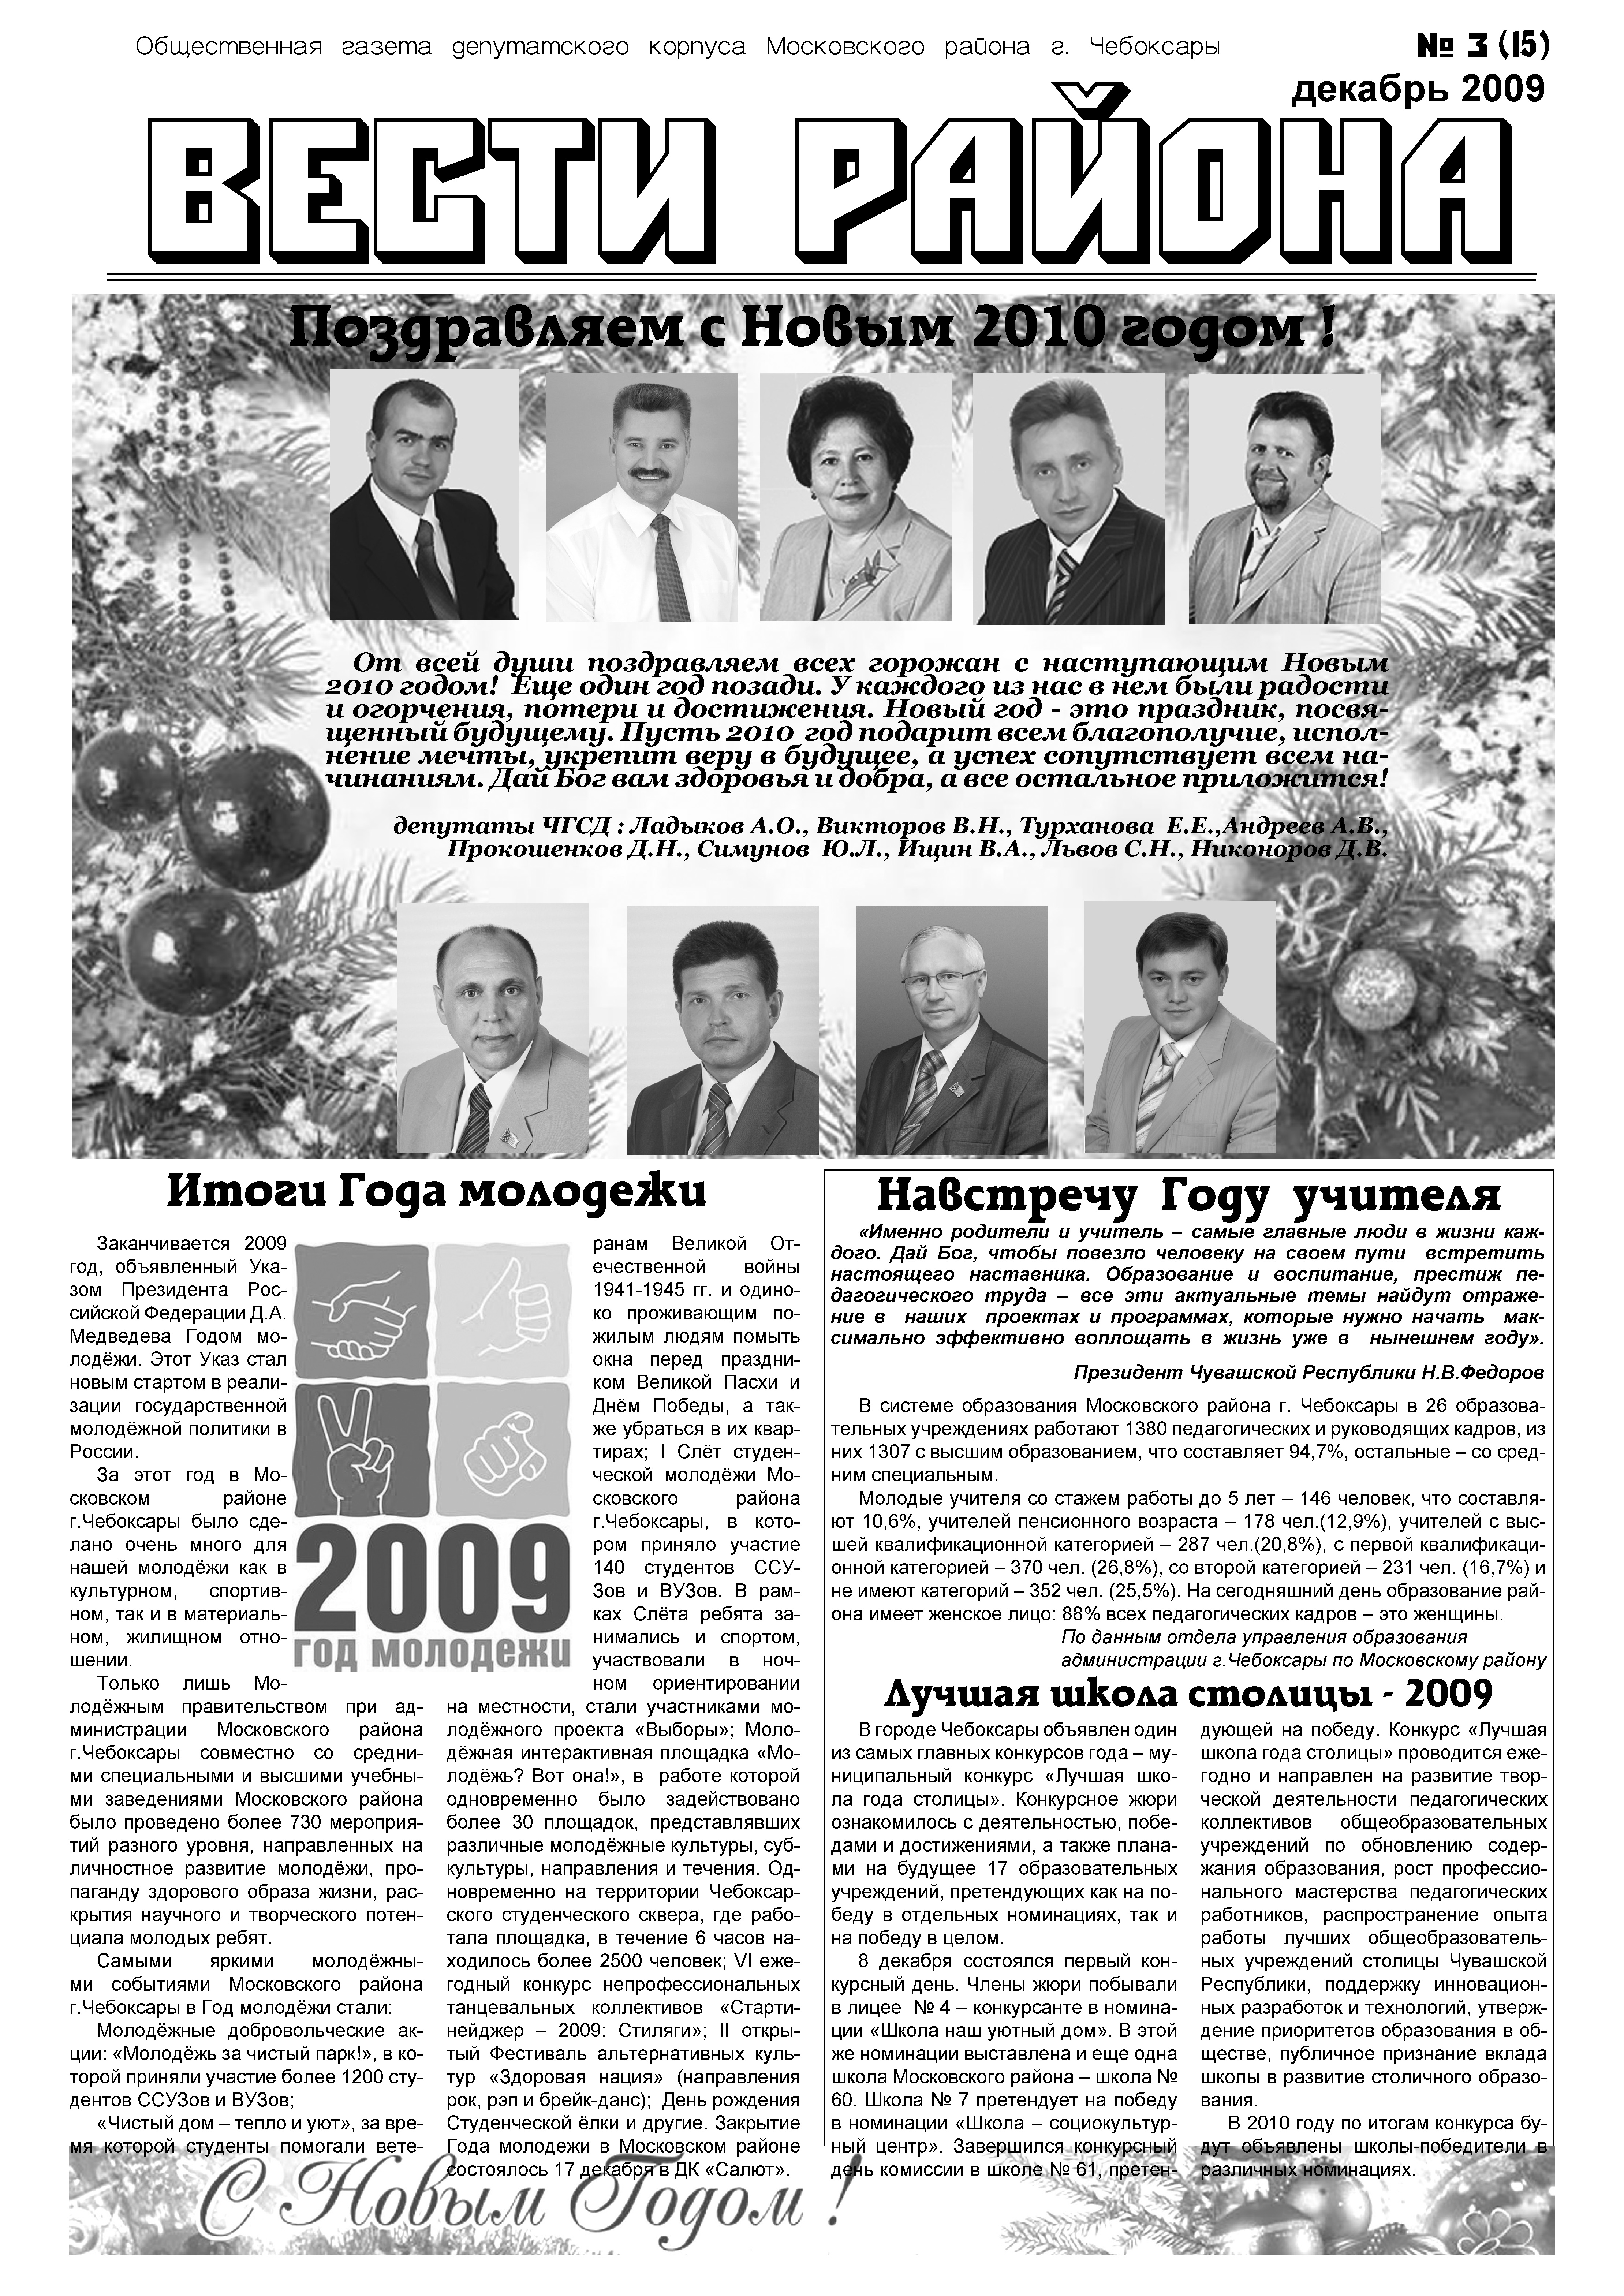 Вышел новогодний номер депутатской газеты «Вести района» 